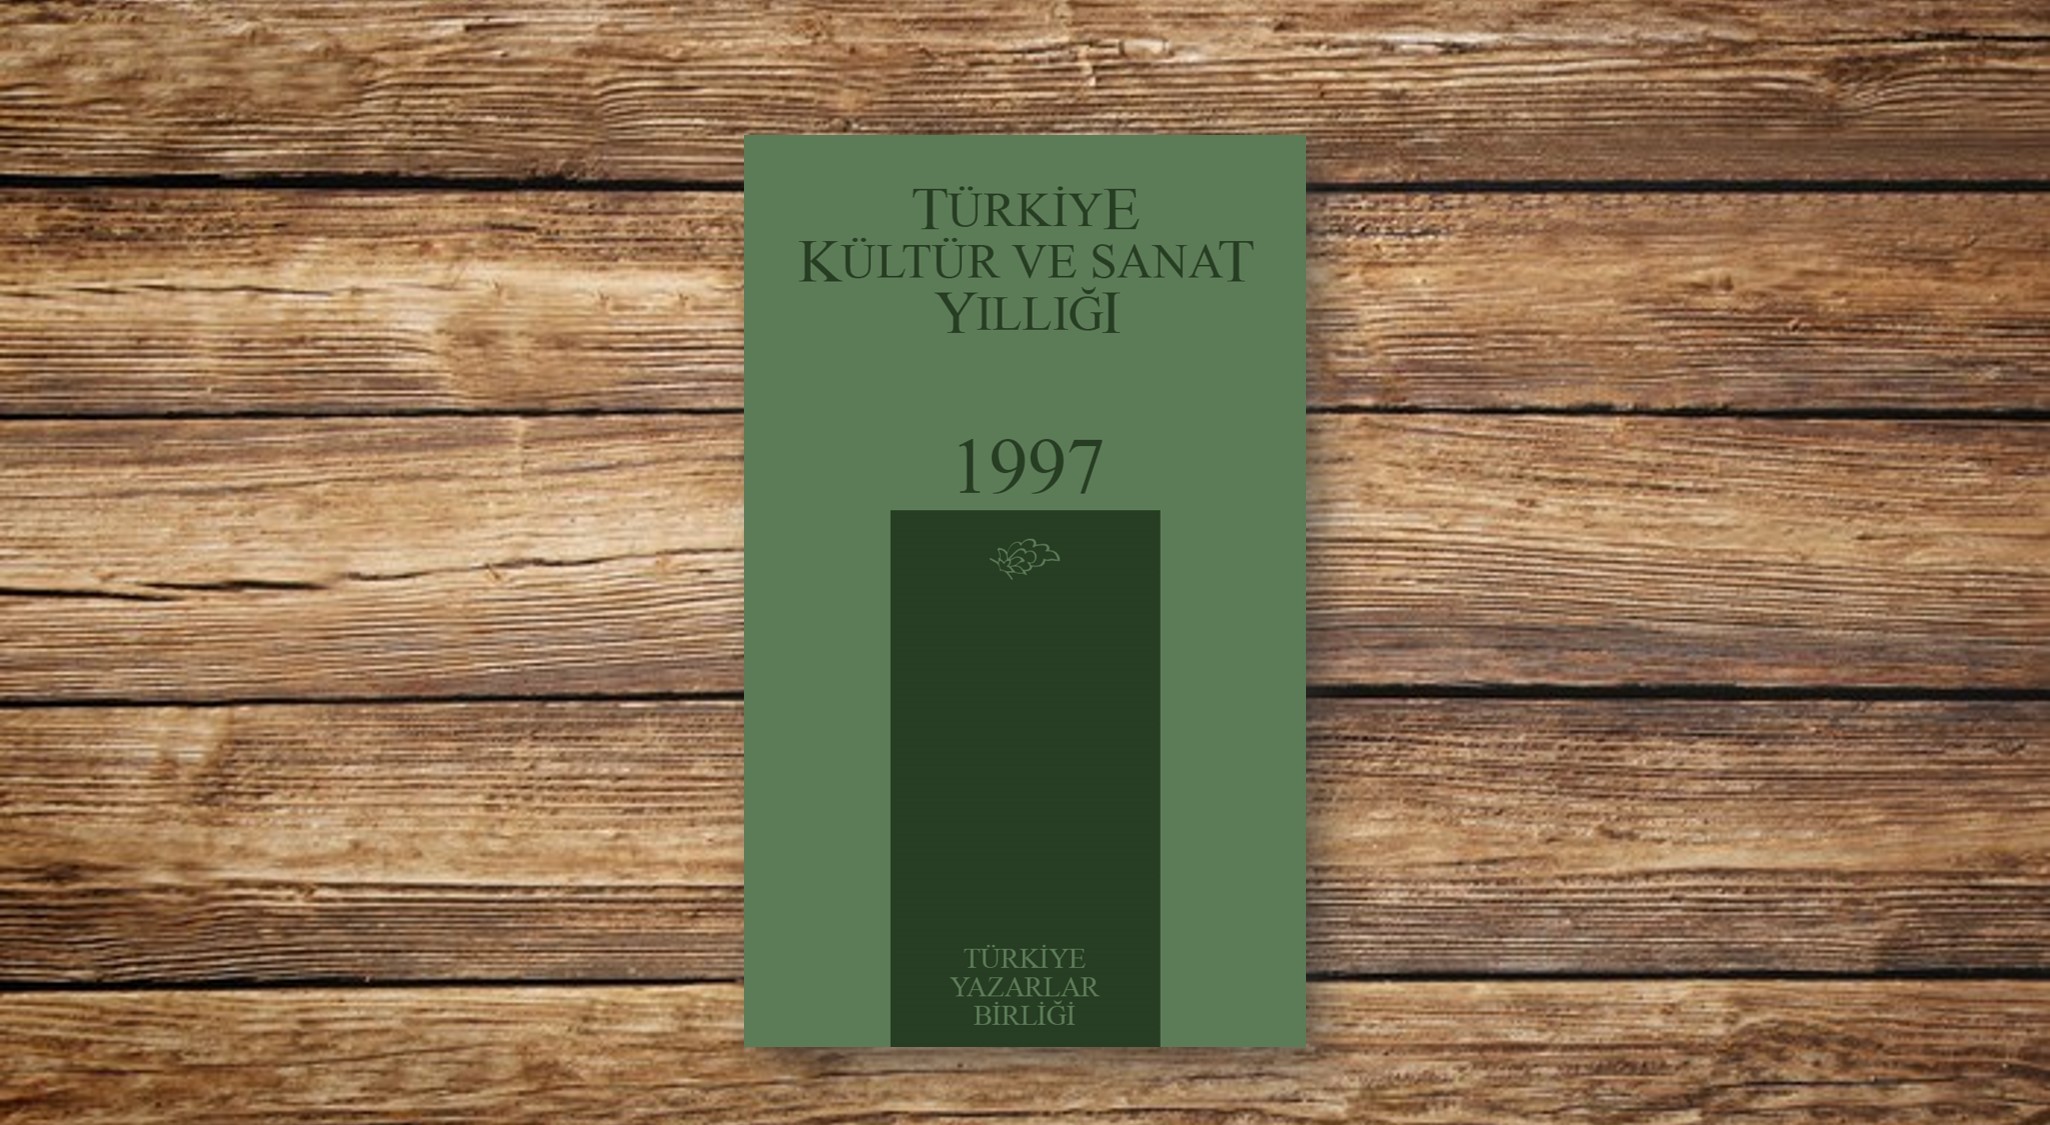 Türkiye Kültür ve Sanat Yıllığı 1997